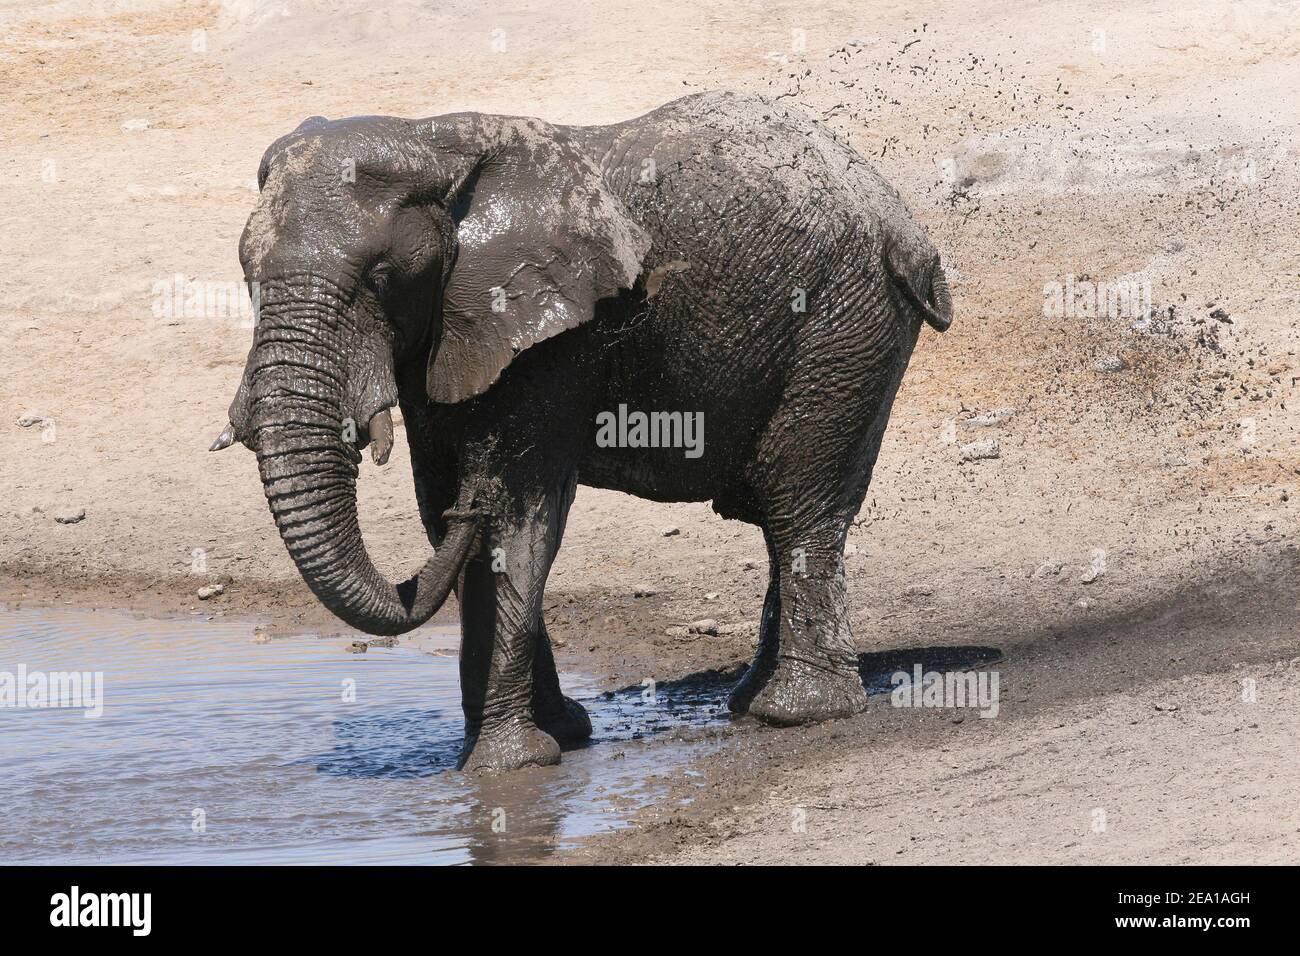 Young Bull Elephant Enjoying A Mud Splashing at Etosha National Park, Namibia Stock Photo